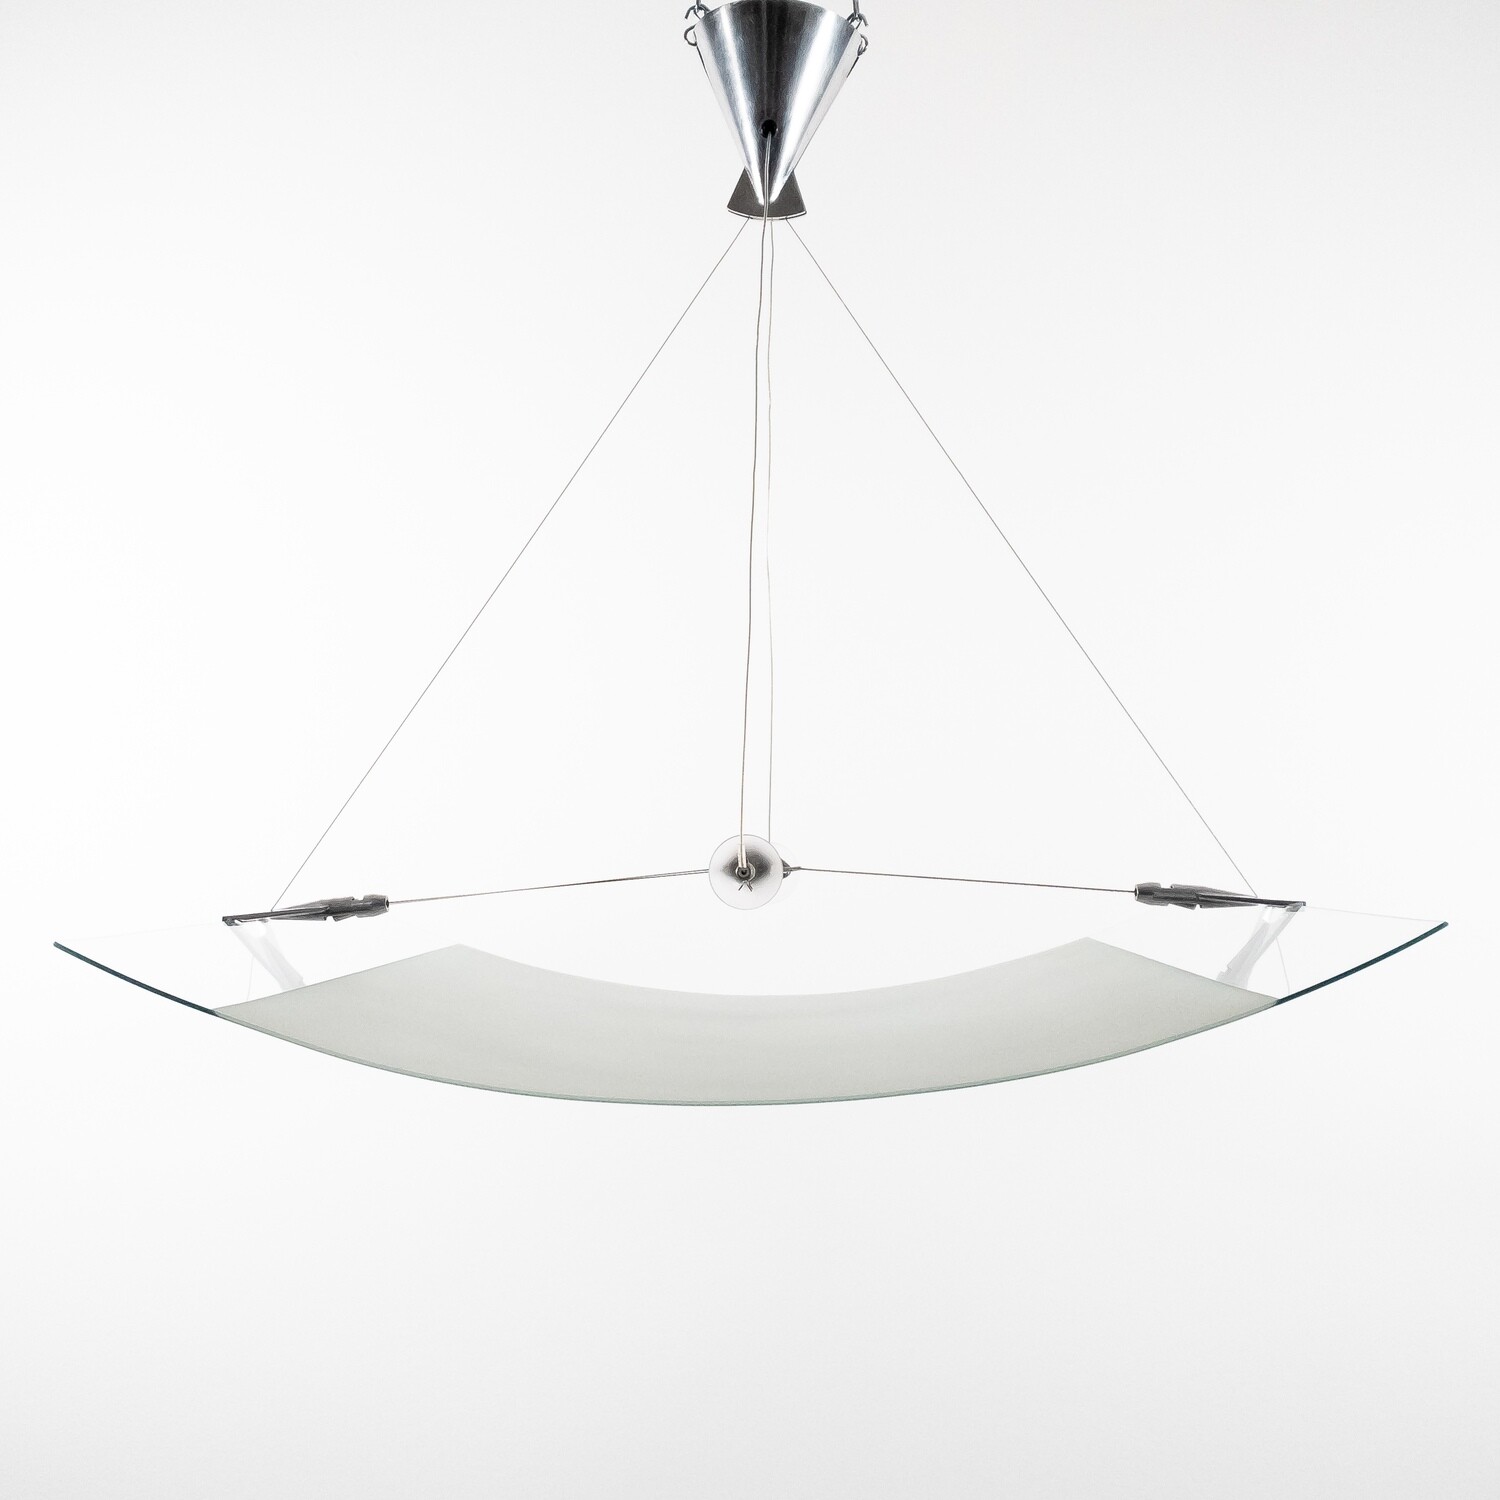 Velo Media suspension lamp, by Franco Raggi for Fontana Arte